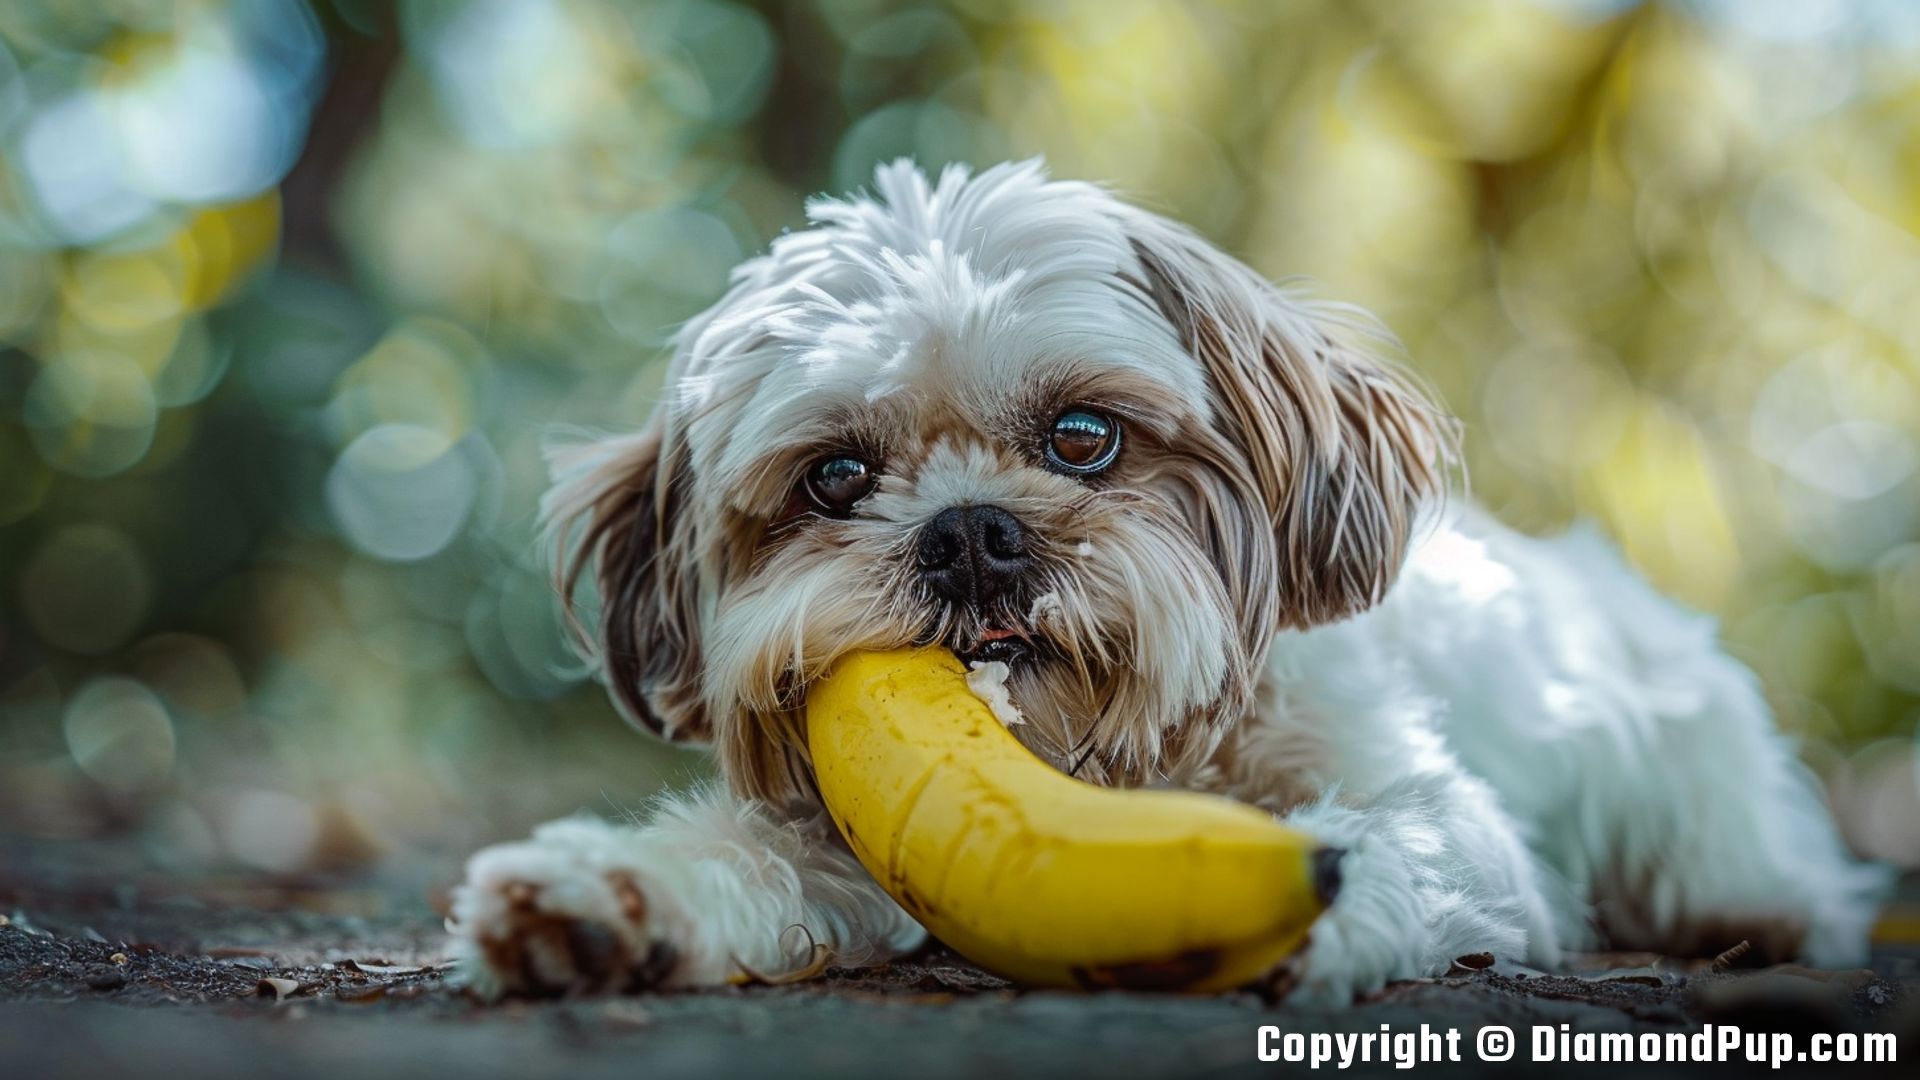 Image of an Adorable Shih Tzu Snacking on Banana